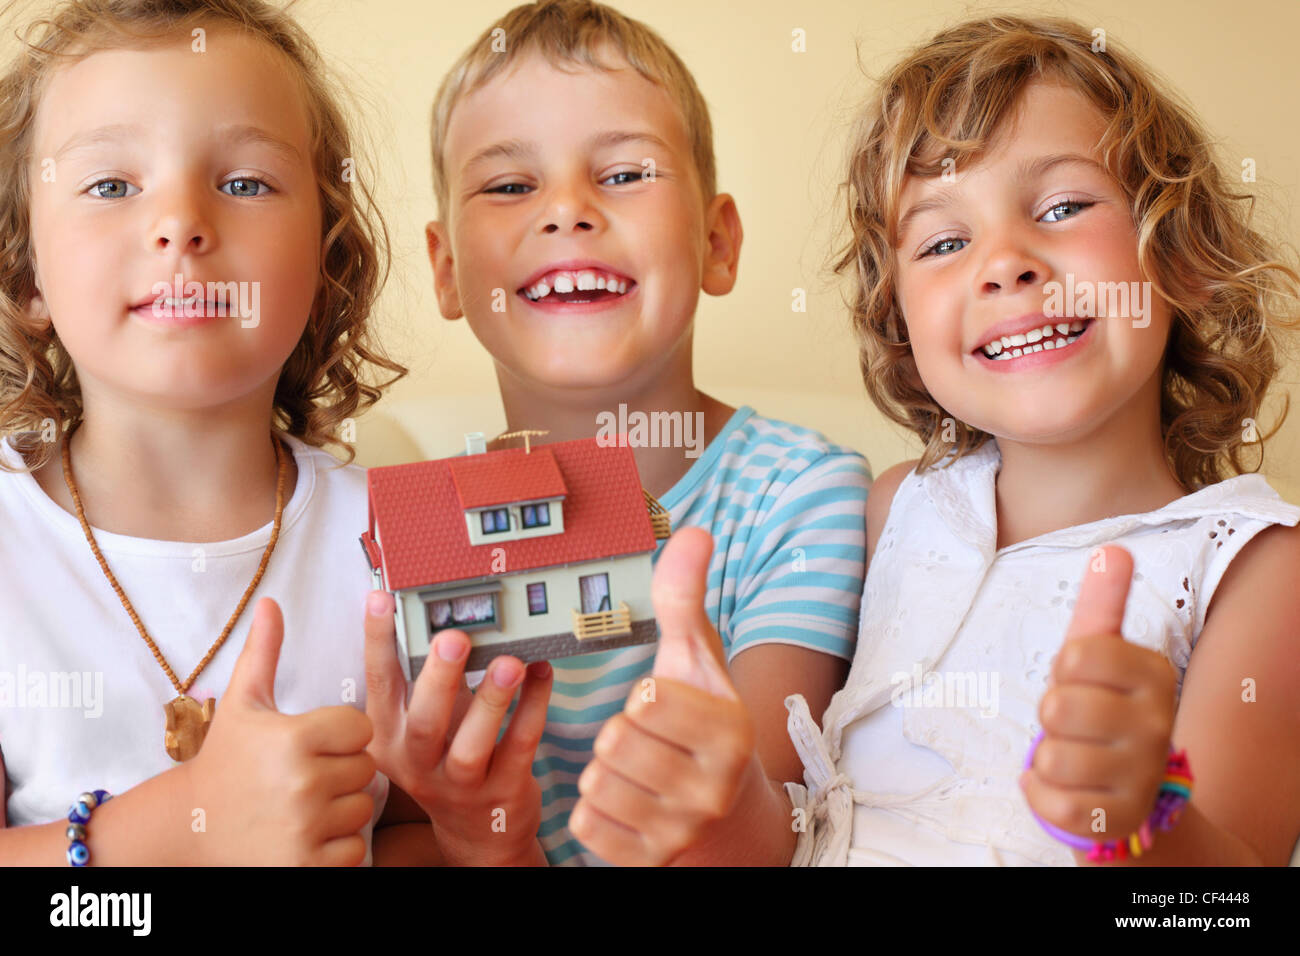 Bambini tre insieme tenendo le mani modello di casa in camera accogliente, mostra ок gesto Foto Stock